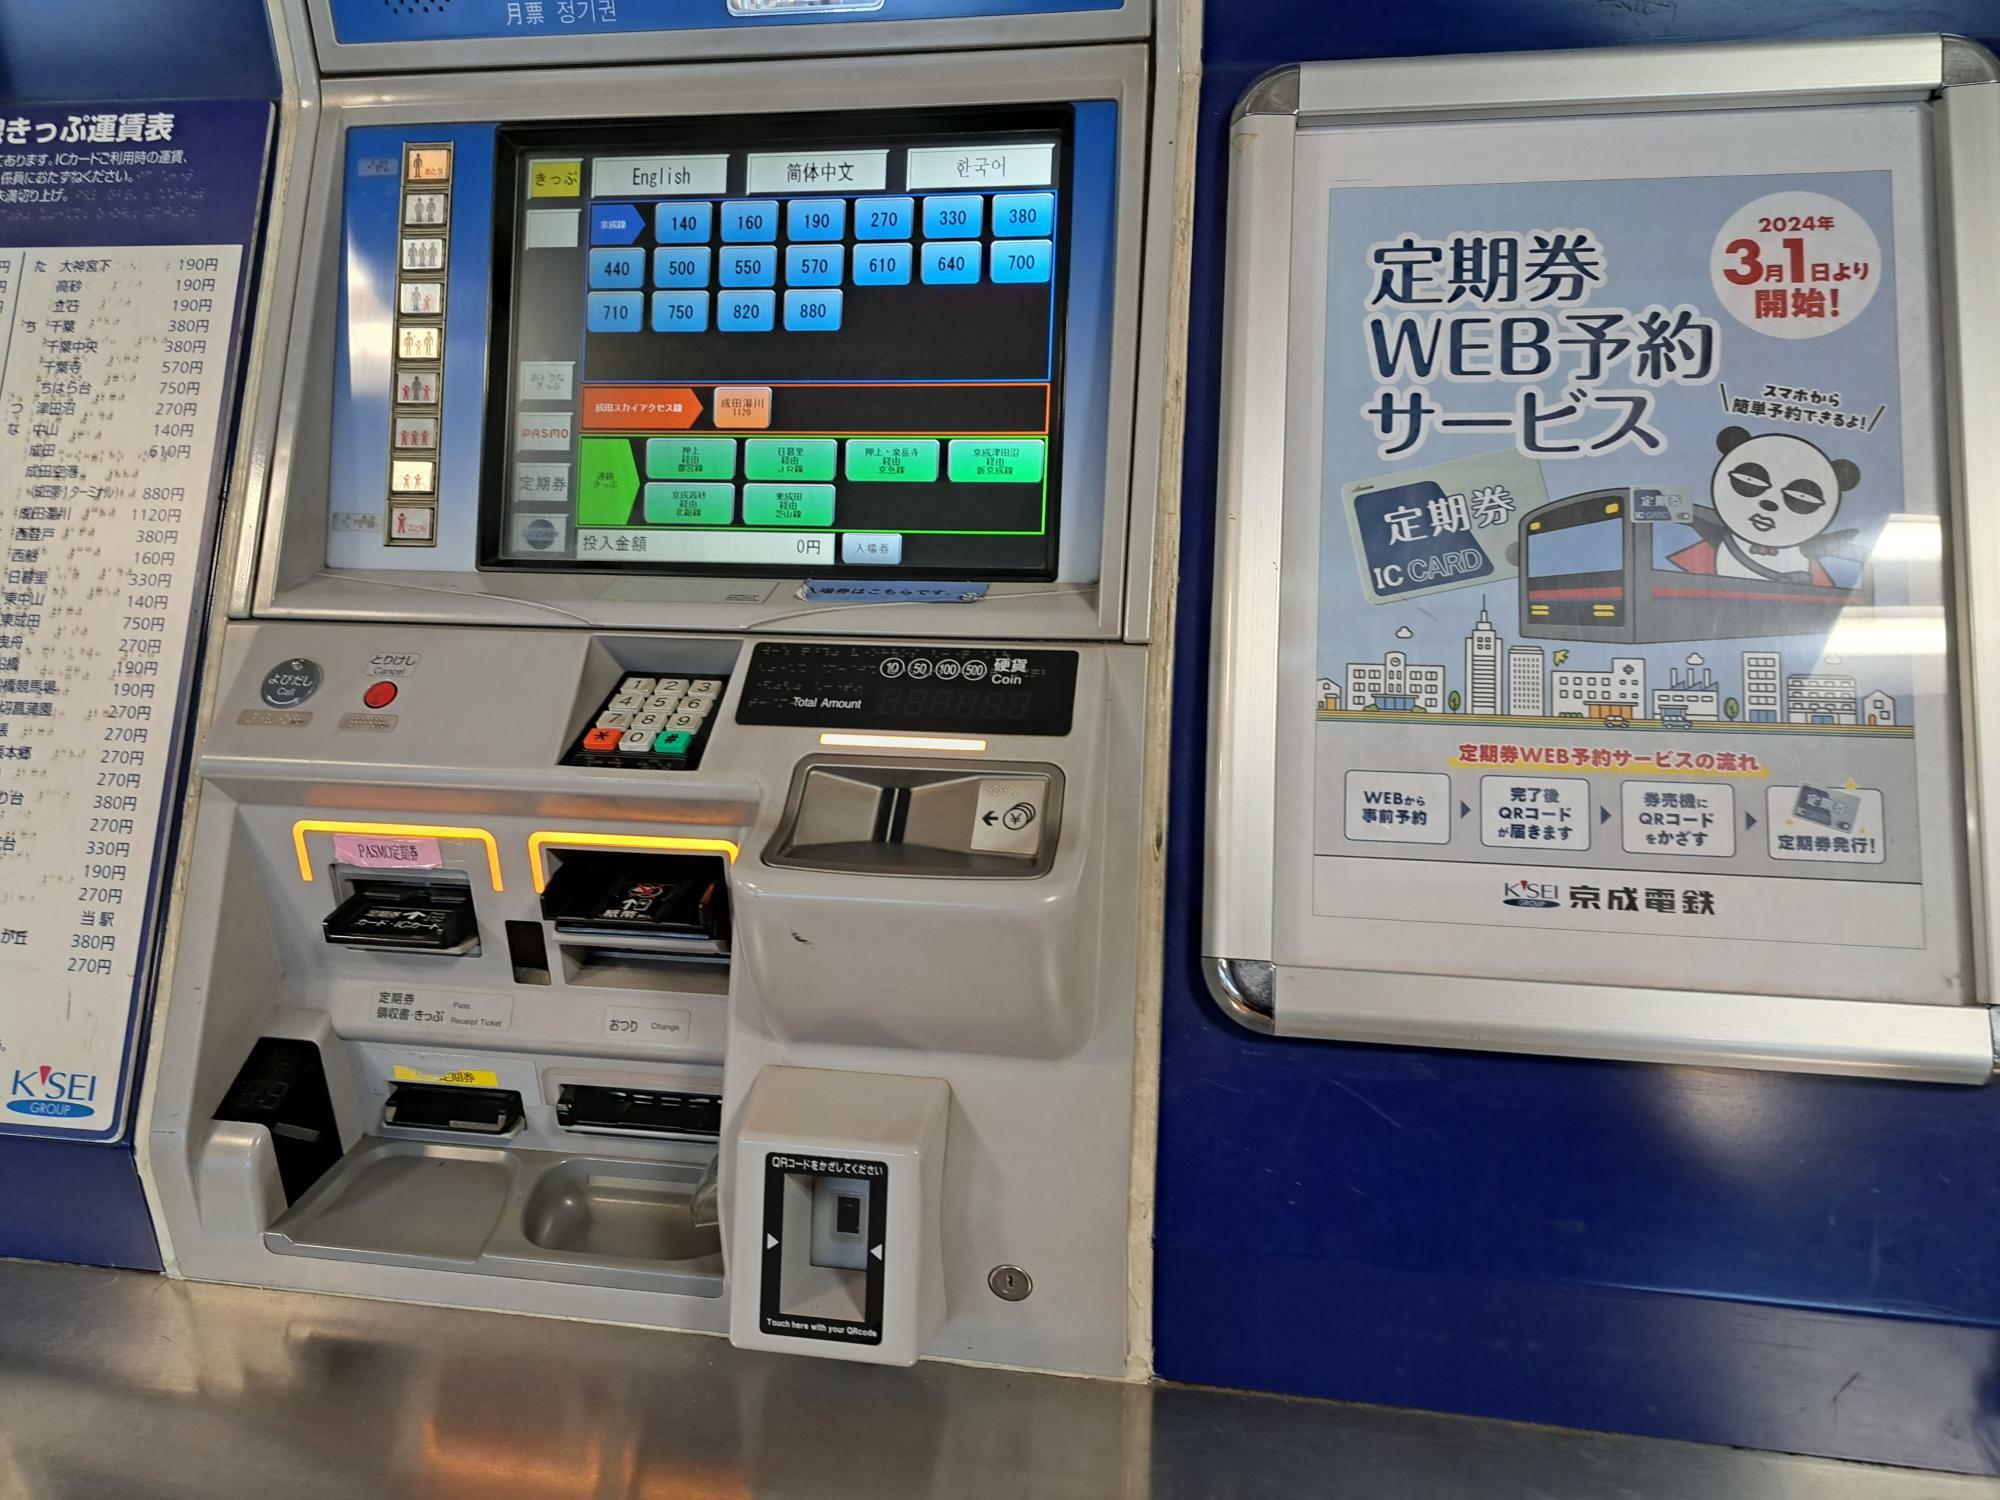 右下に2次元バーコードリーダーが設置されている青い券売機が今回の対象。